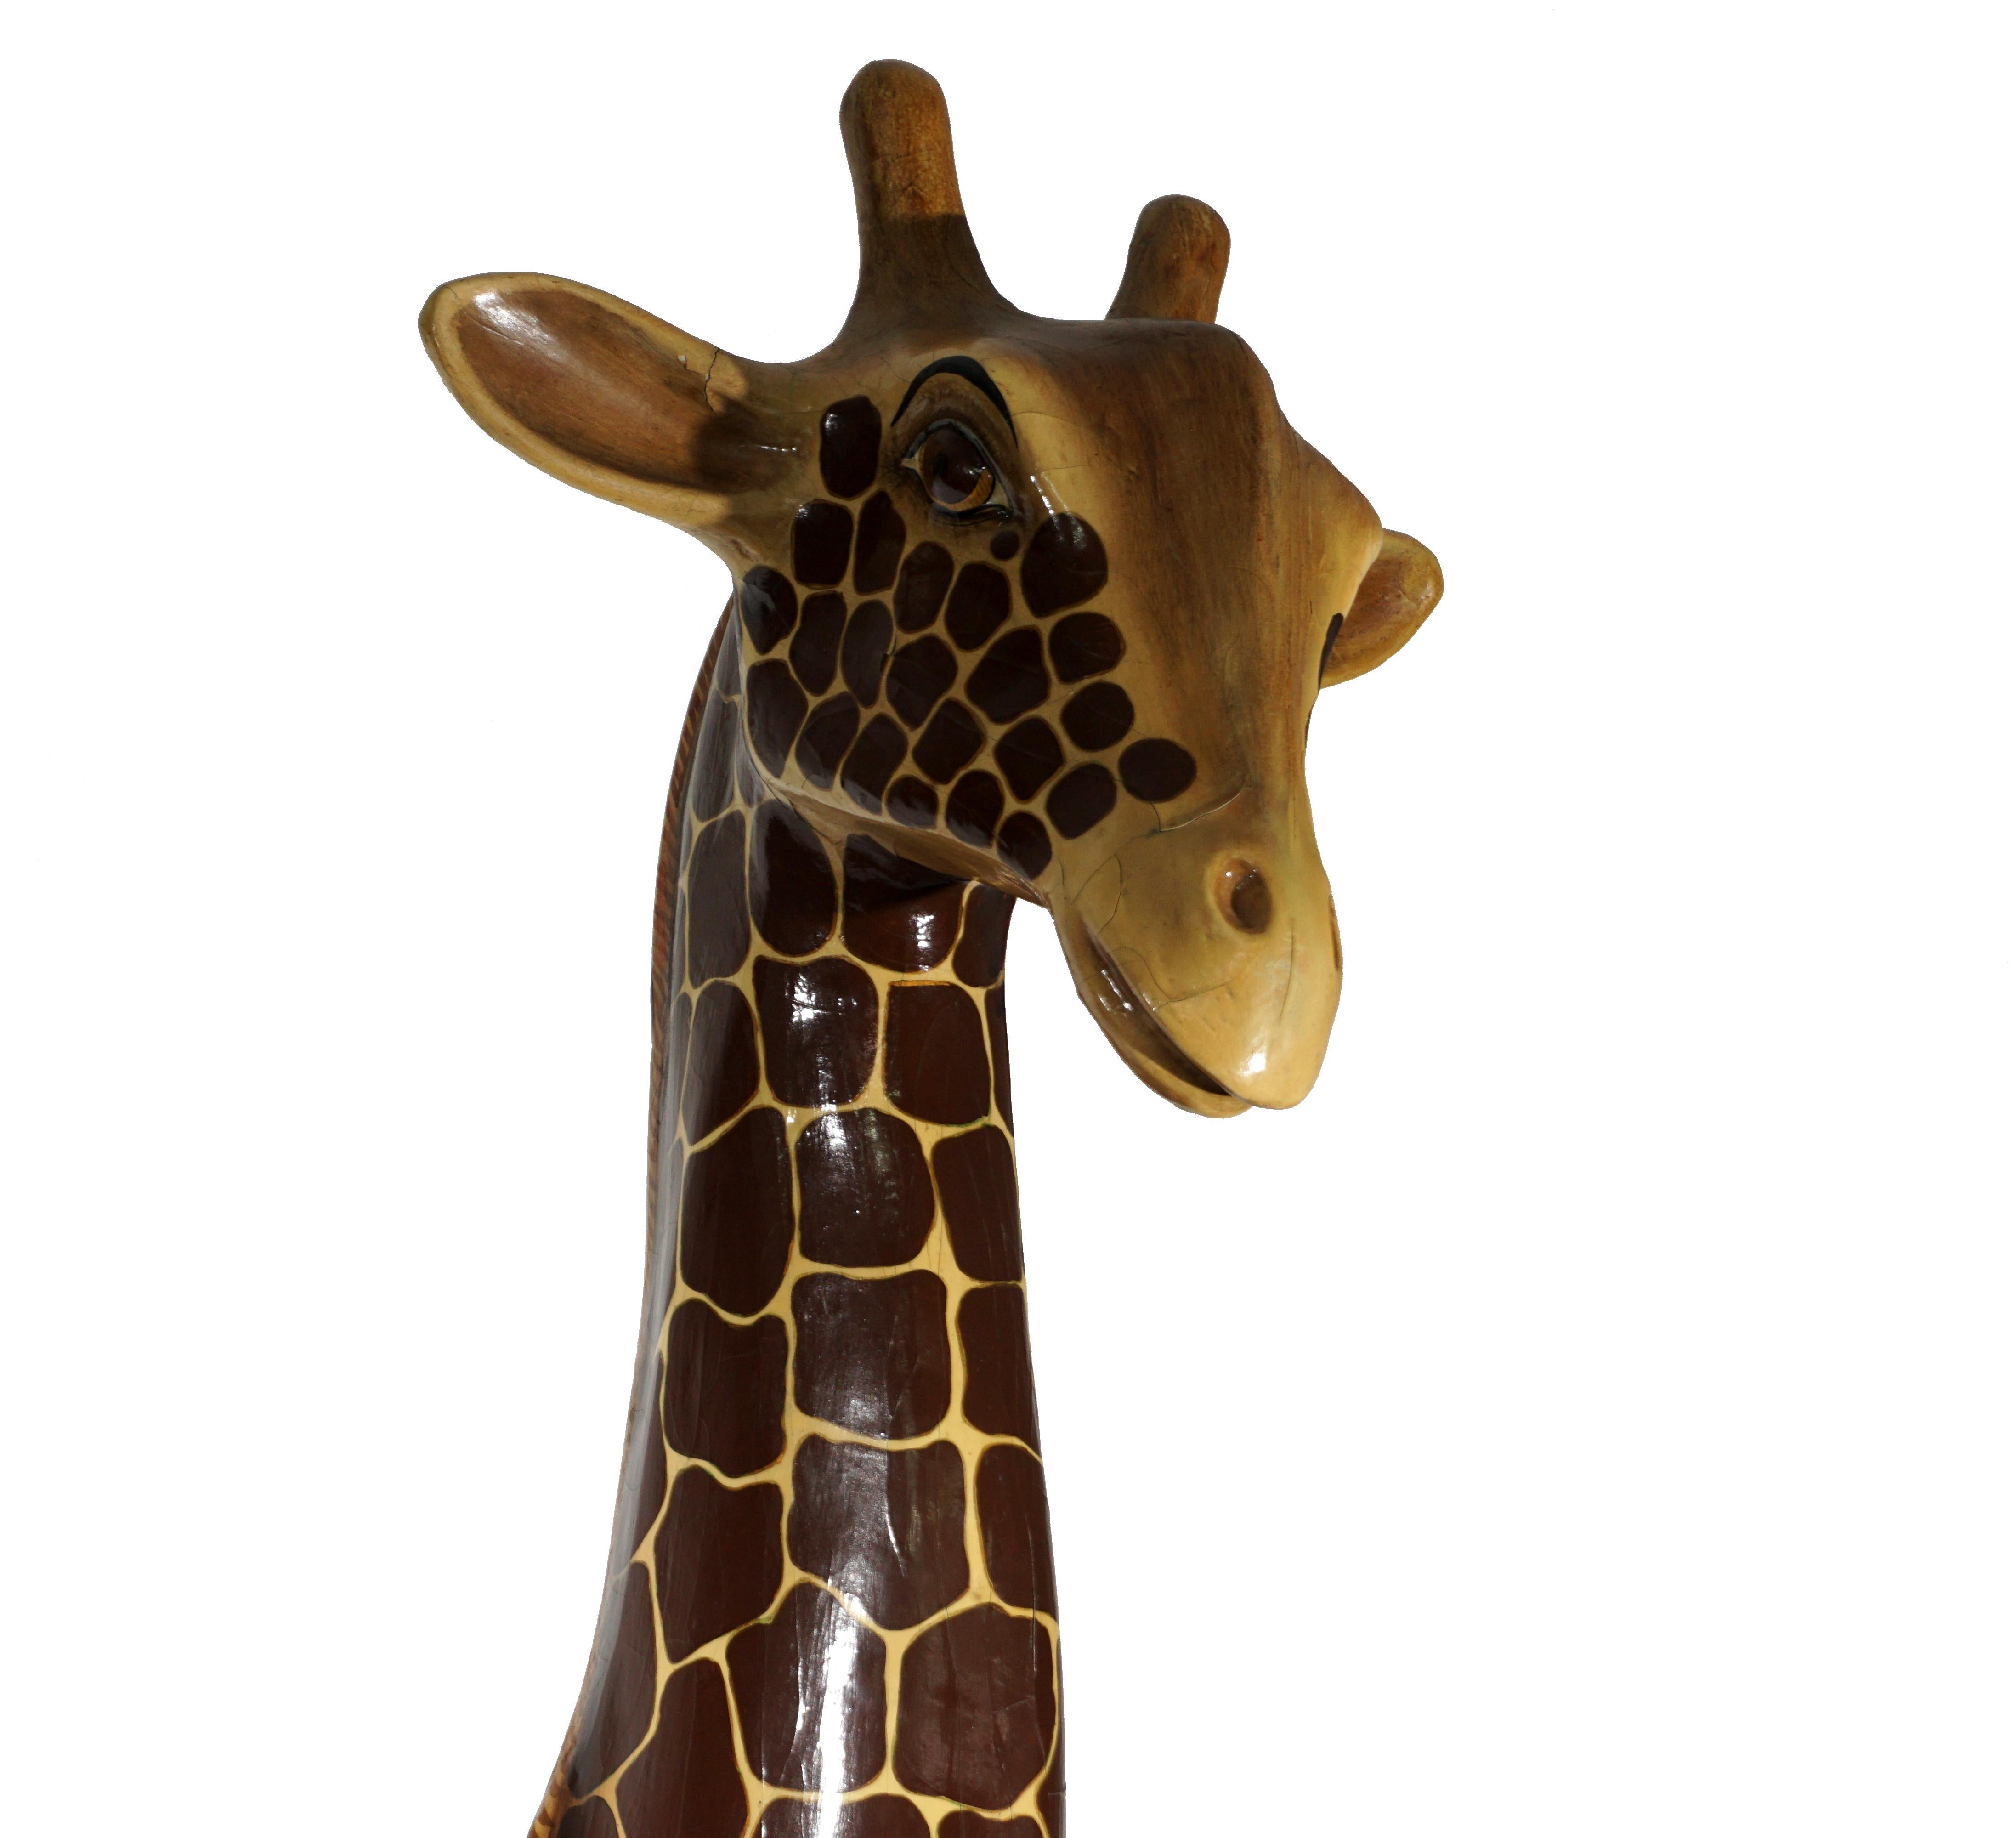 Magnifique buste de girafe en papier mâché réalisé à la main par l'artiste mexicain Sergio Bustamante dans les années 1970.
L'ensemble est en très bon état, les craquelures sont normales avec l'âge et sont bien intégrées.